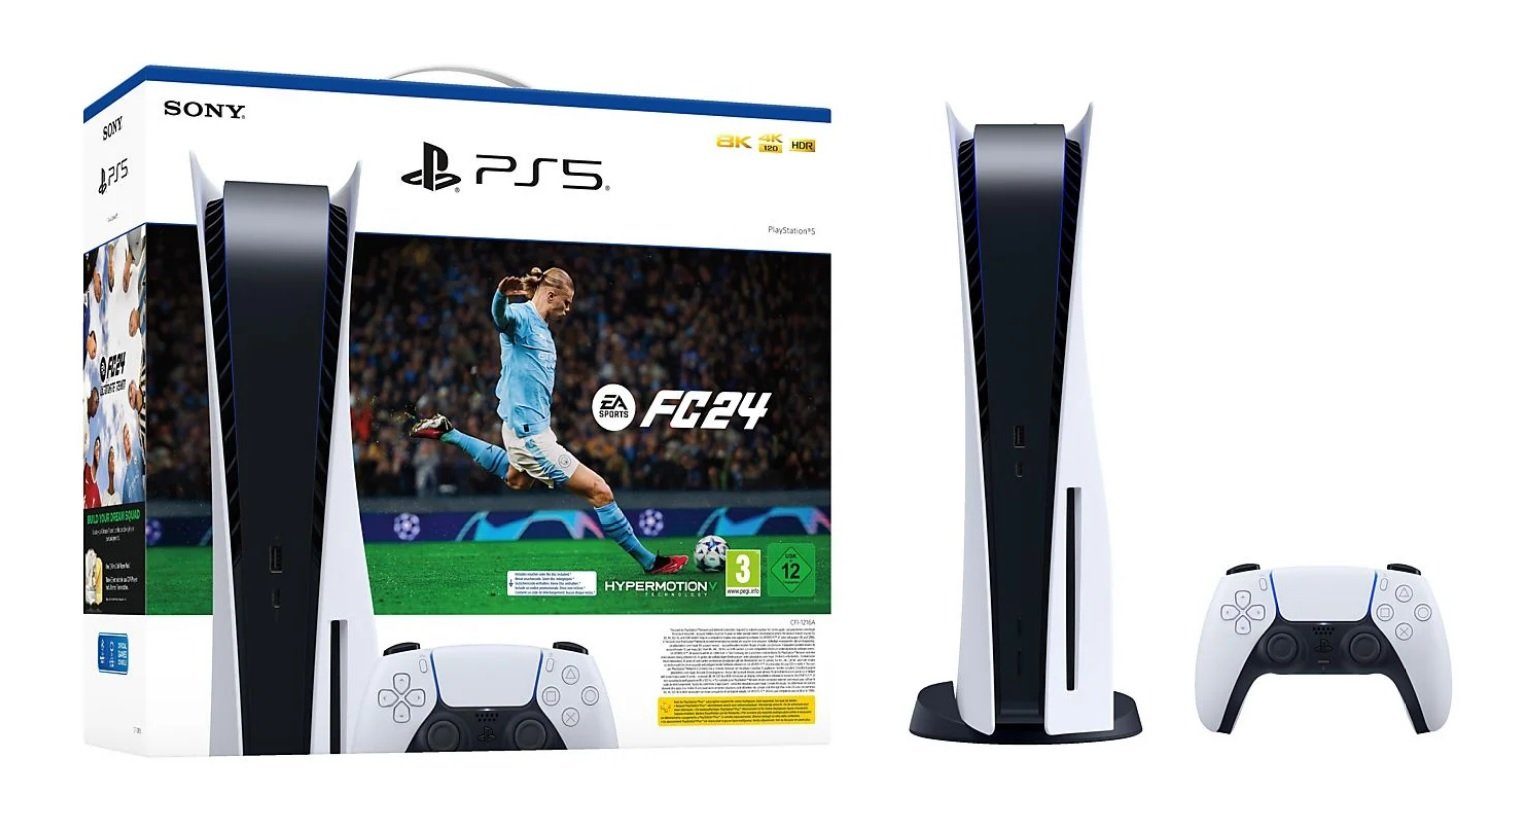 Playstation Playstation 5 Konsole Disk Laufwerk + FC 24 (FIFA 24) Gutschein (inkl. FIFA 24 Gutschein Code)